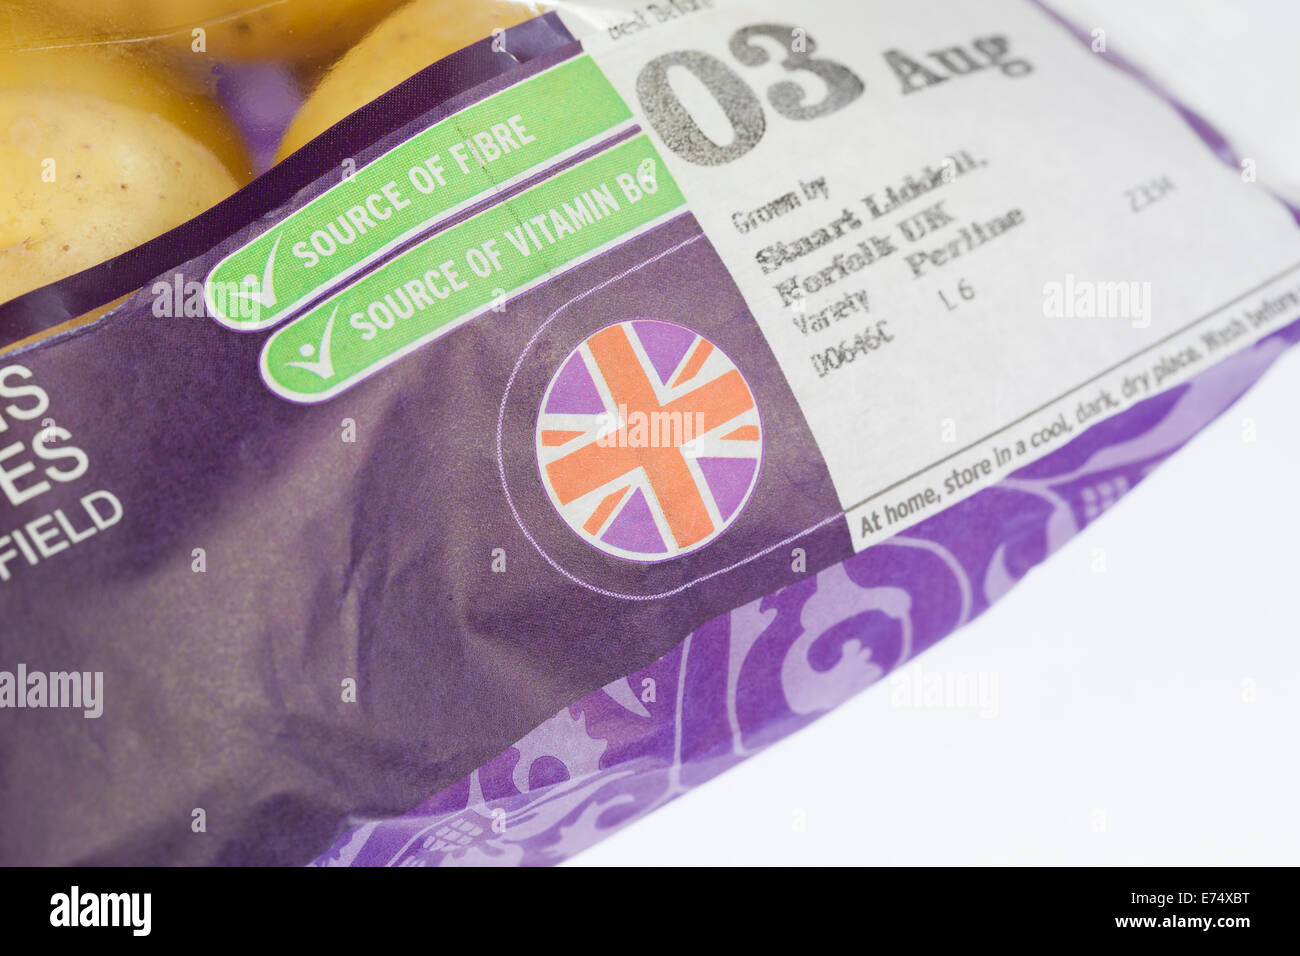 Union Jack flag label on food packing, UK Stock Photo